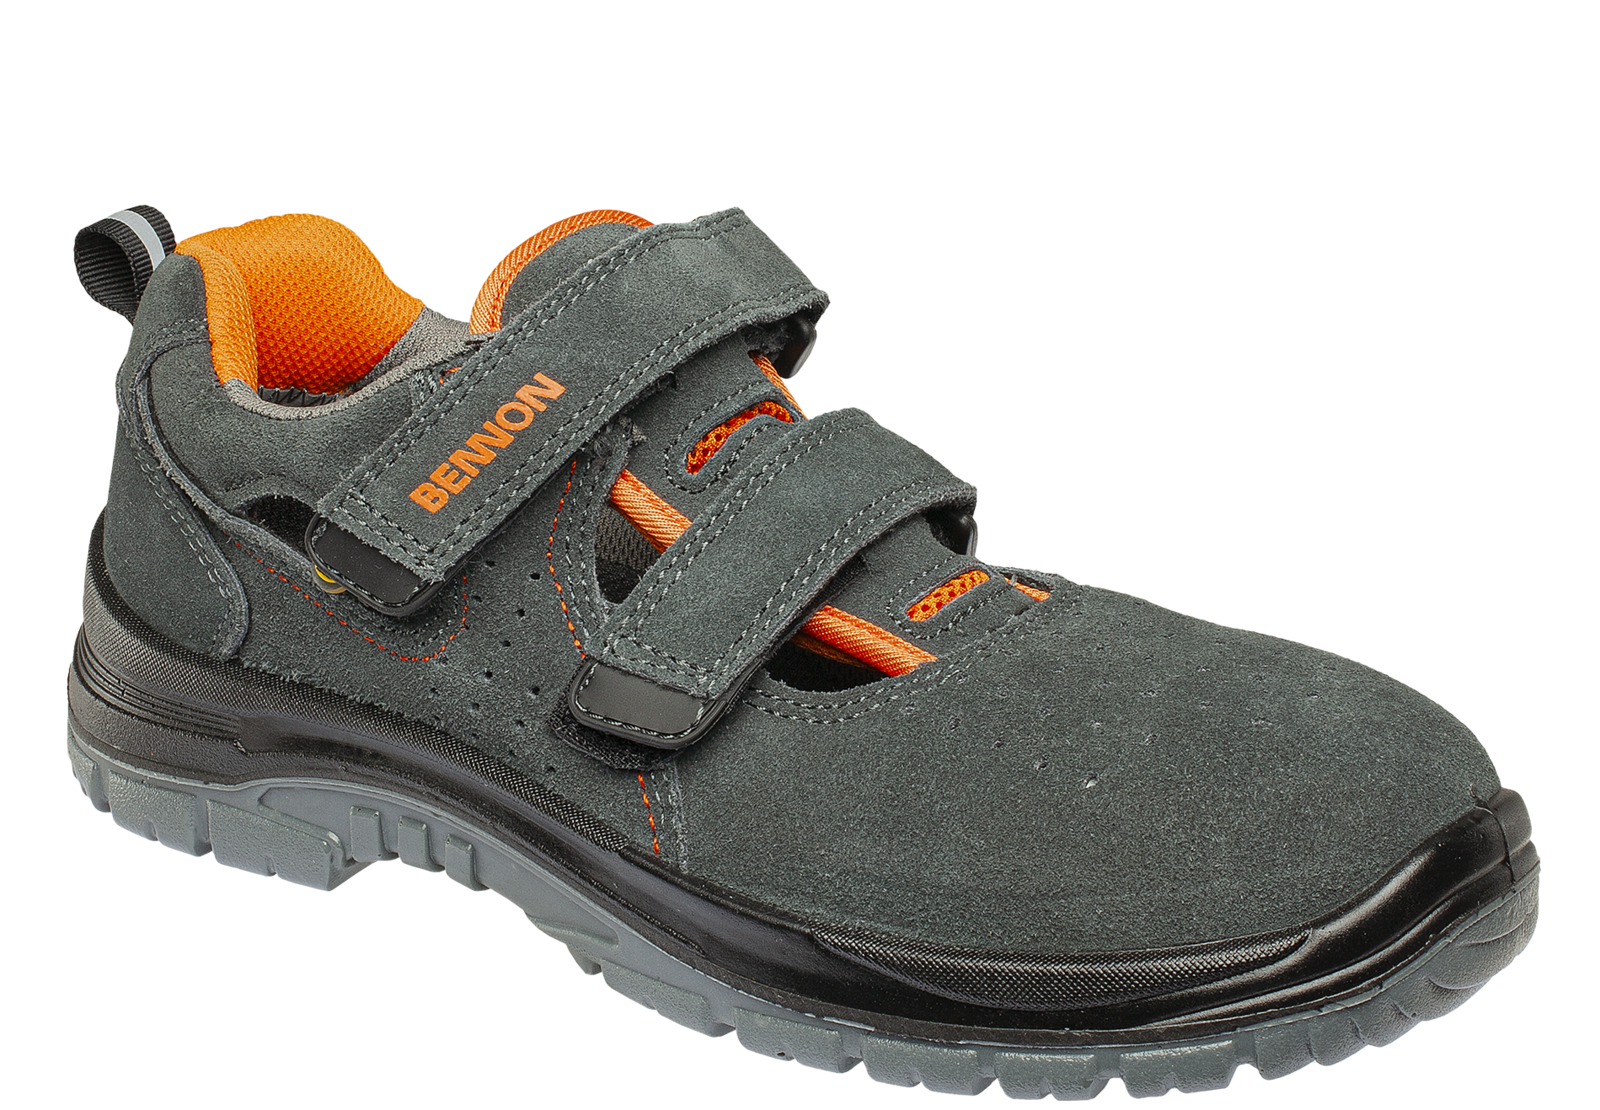 Bezpečnostné sandále Bennon Tobler S1 ESD - veľkosť: 49, farba: sivá/oranžová